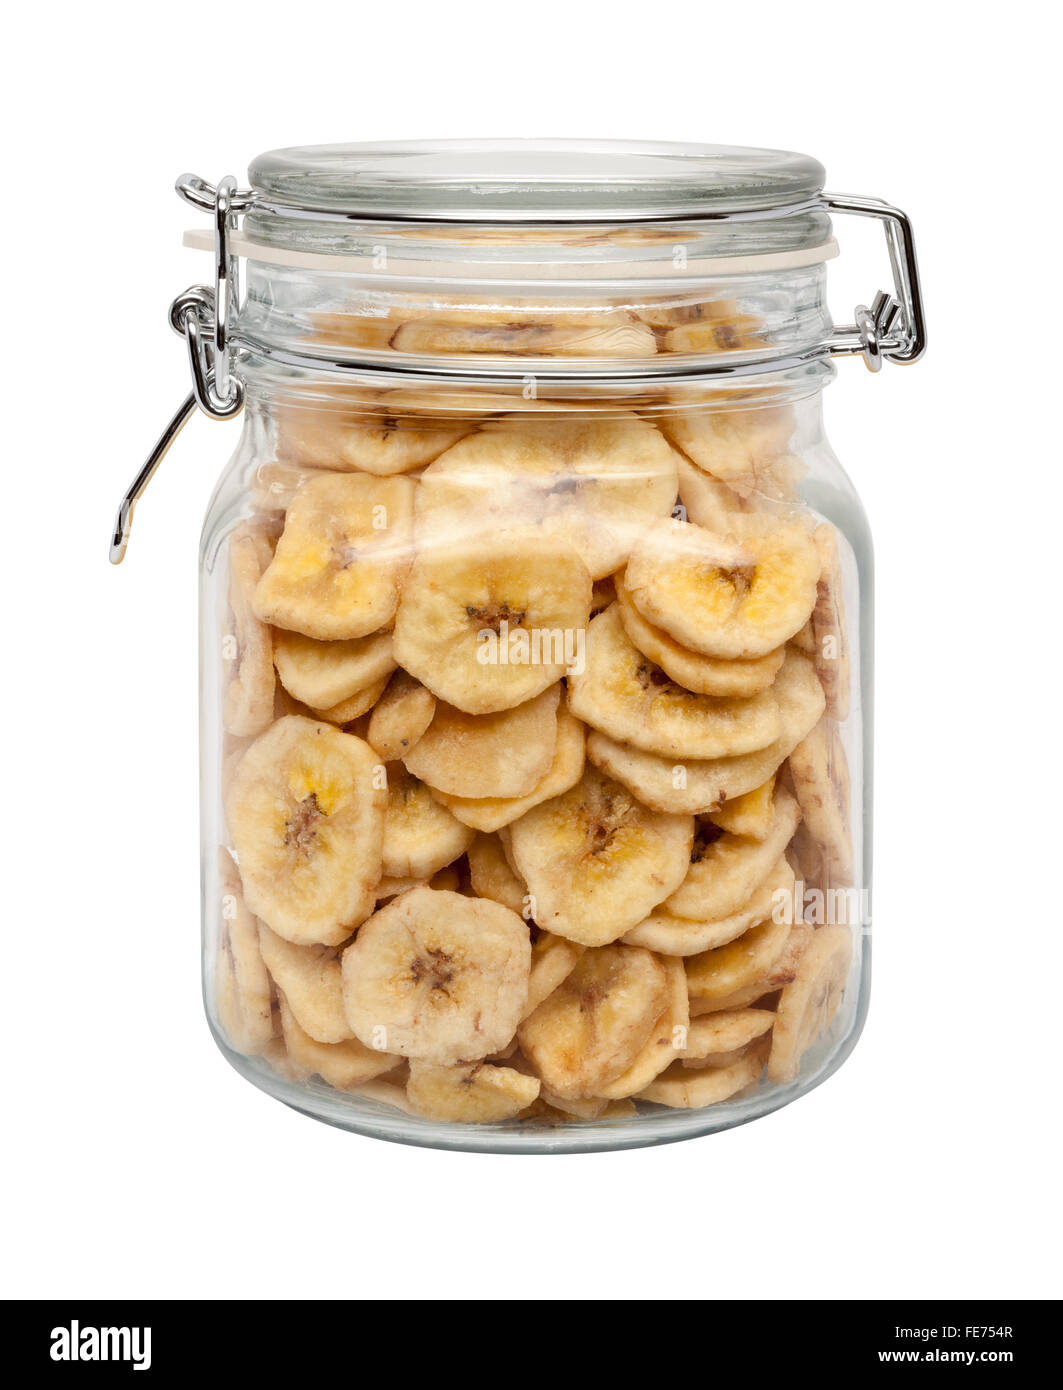 Getrocknete Bananenchips in einem Glas-Kanister mit einer Metallklemme. Das Bild zeigt einen Ausschnitt isoliert auf einem weißen Hintergrund. Stockfoto